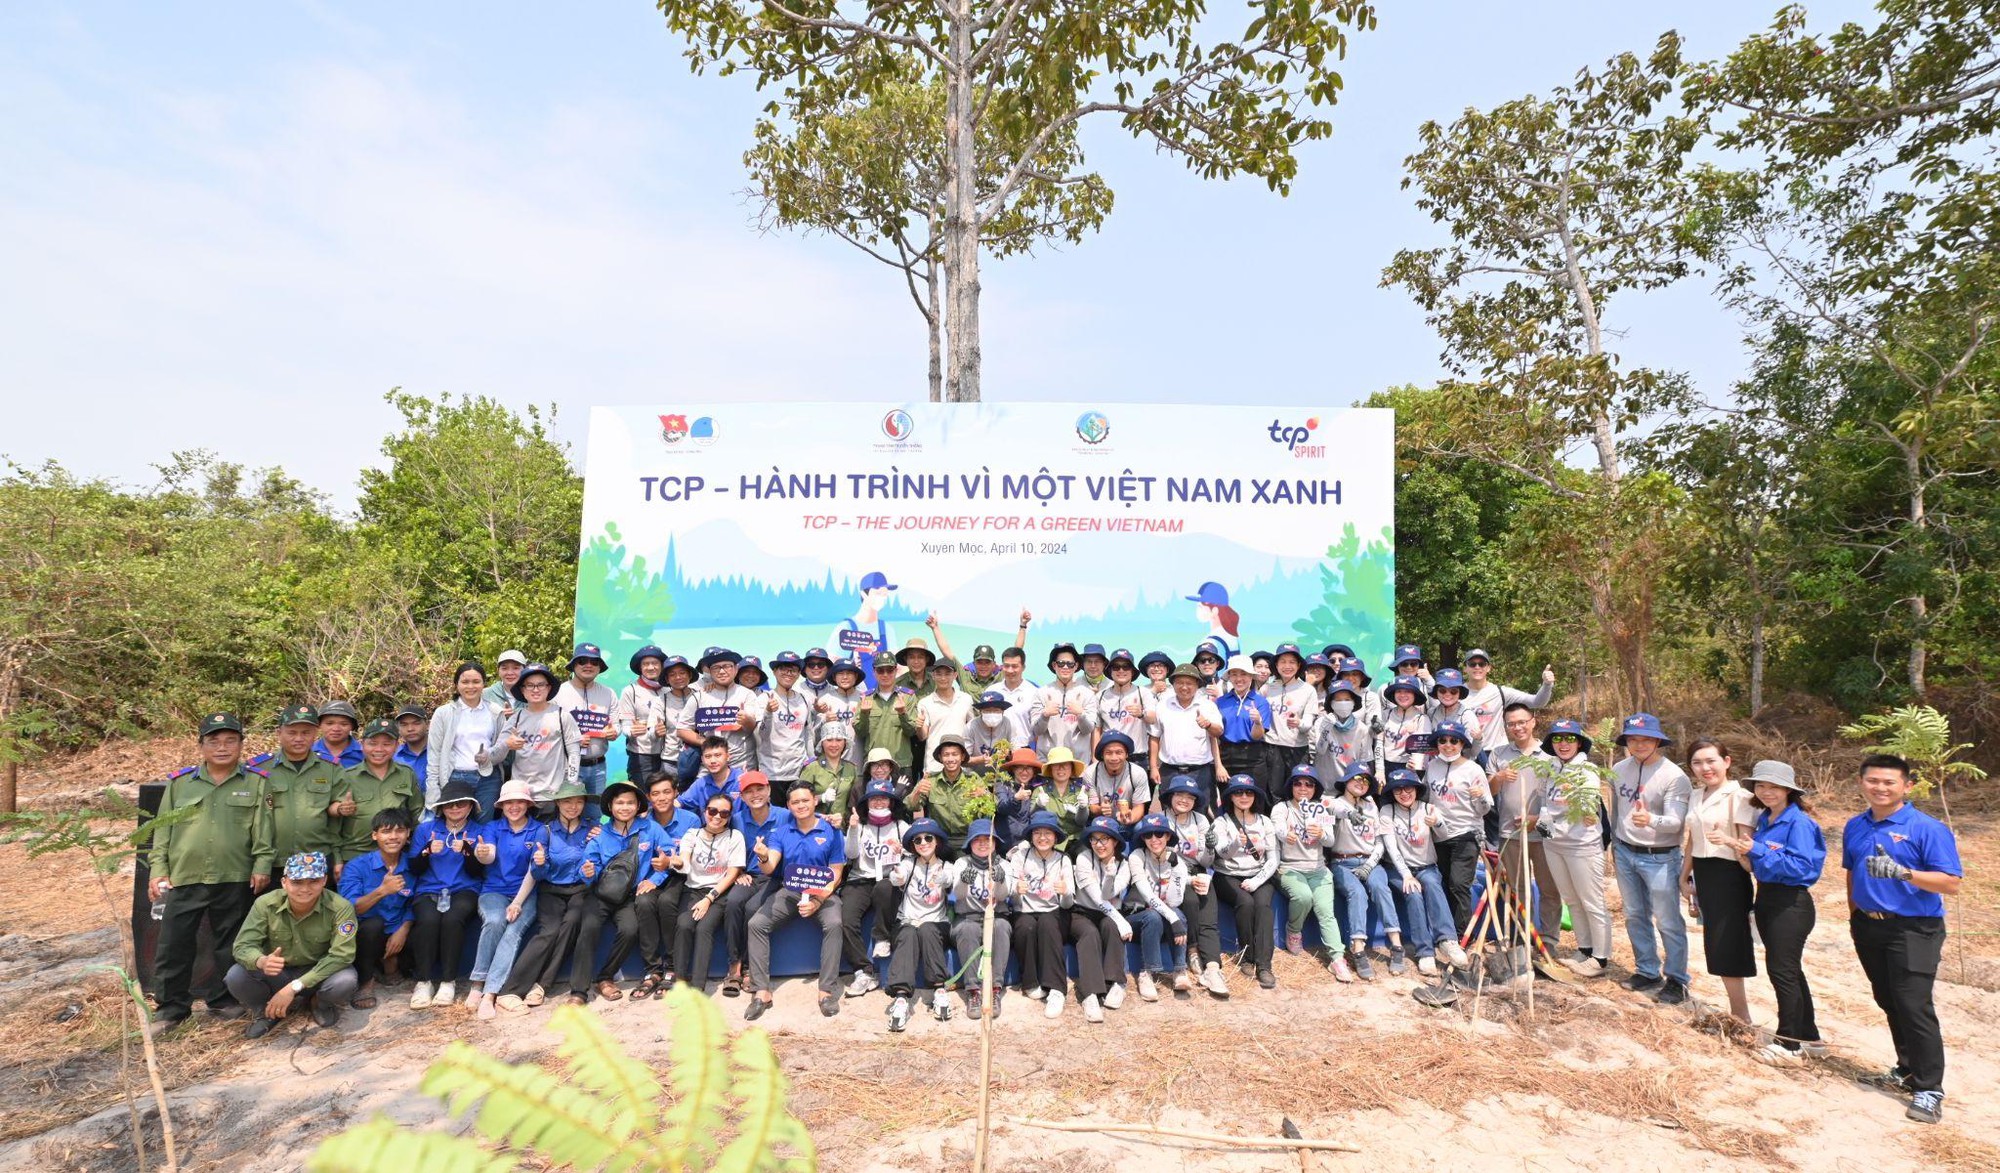 2.700 cây lim được trồng tại tỉnh Bà Rịa Vũng Tàu cho Việt Nam thêm xanh- Ảnh 1.